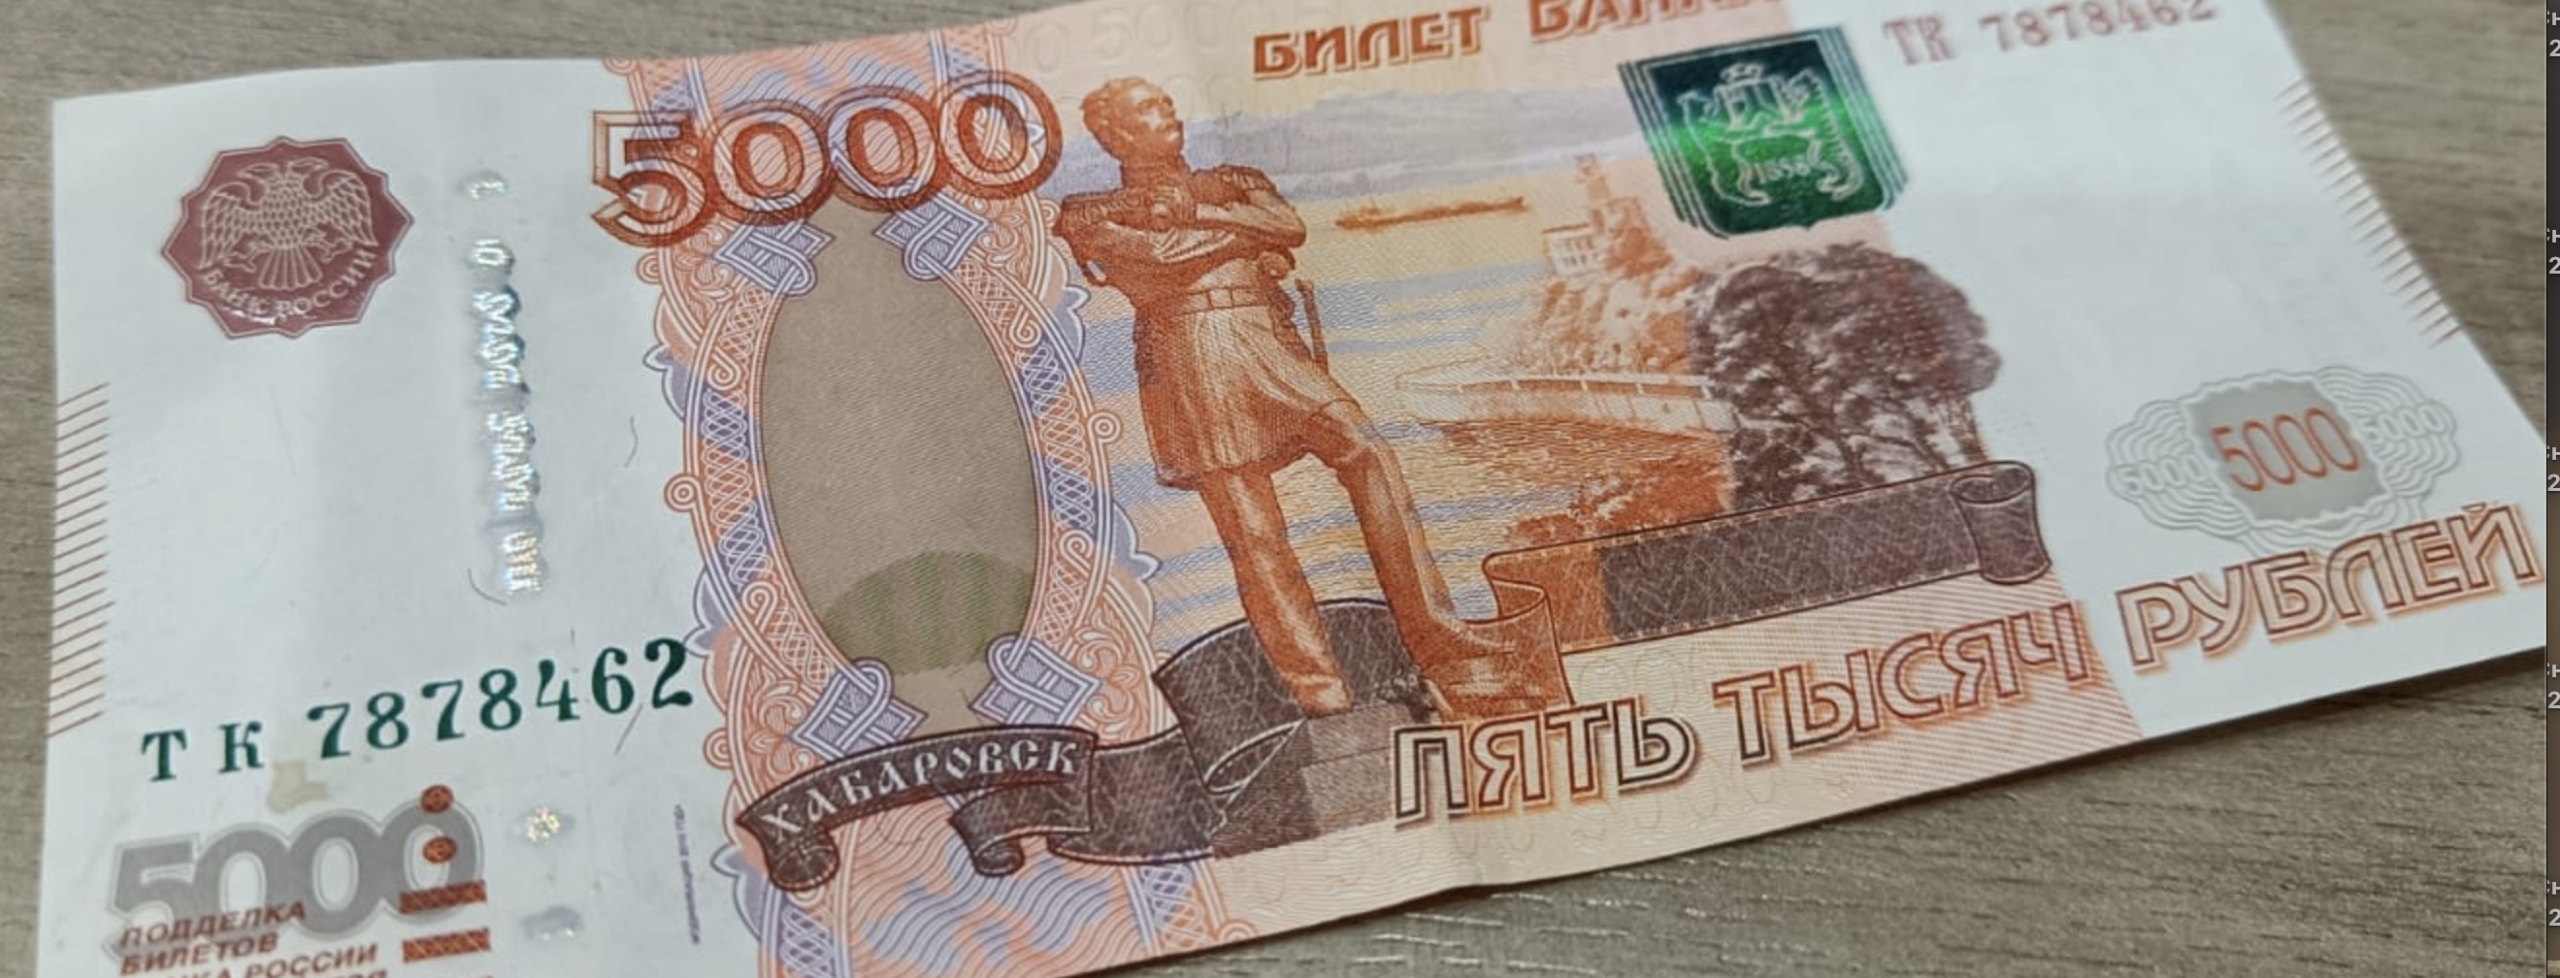 Экономисты назвали условия окончания денег в резервах российской казны